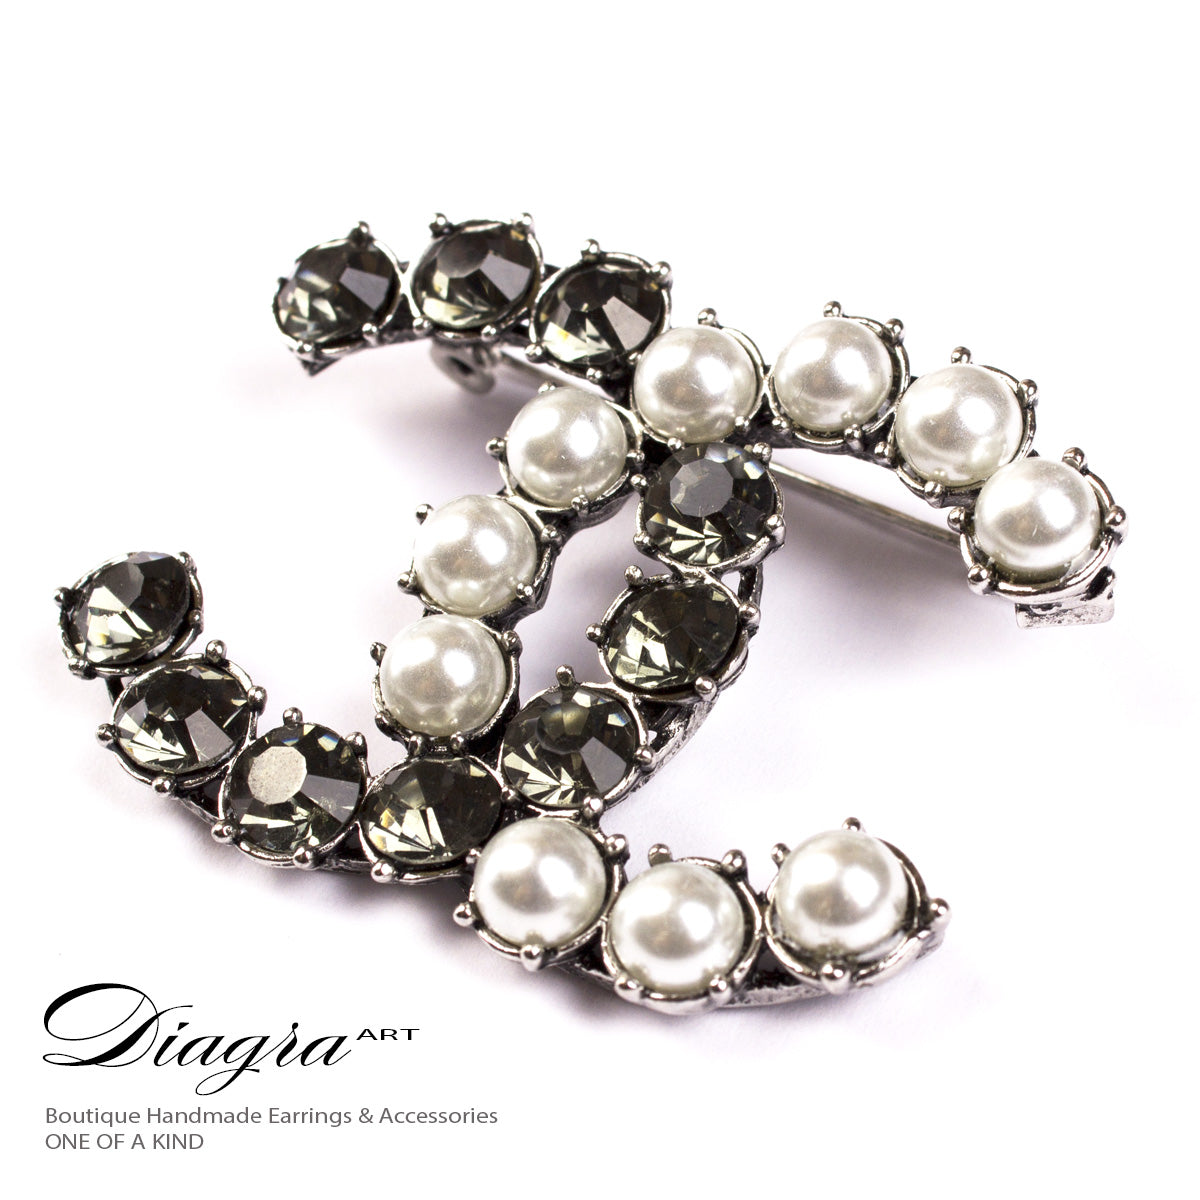 Chanel brooch handmade designer inspired 61912 pearls crystal – Diagra